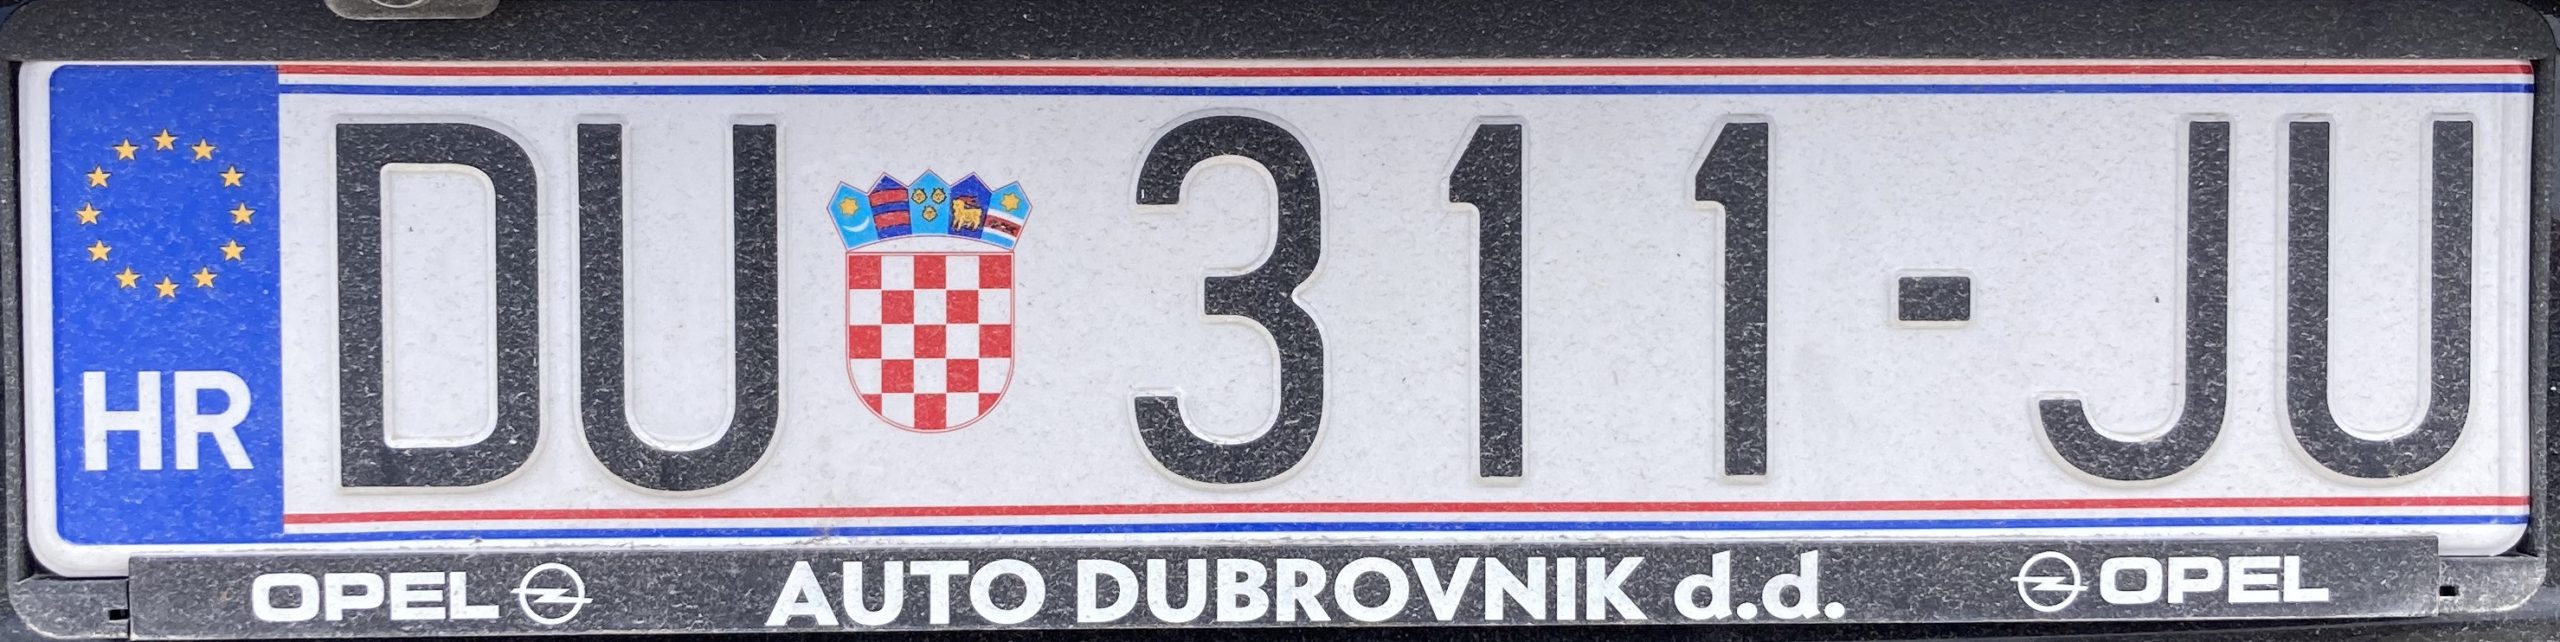 Registrační značka Chorvatsko - DU - Dubrovnik, foto: www.podalnici.cz